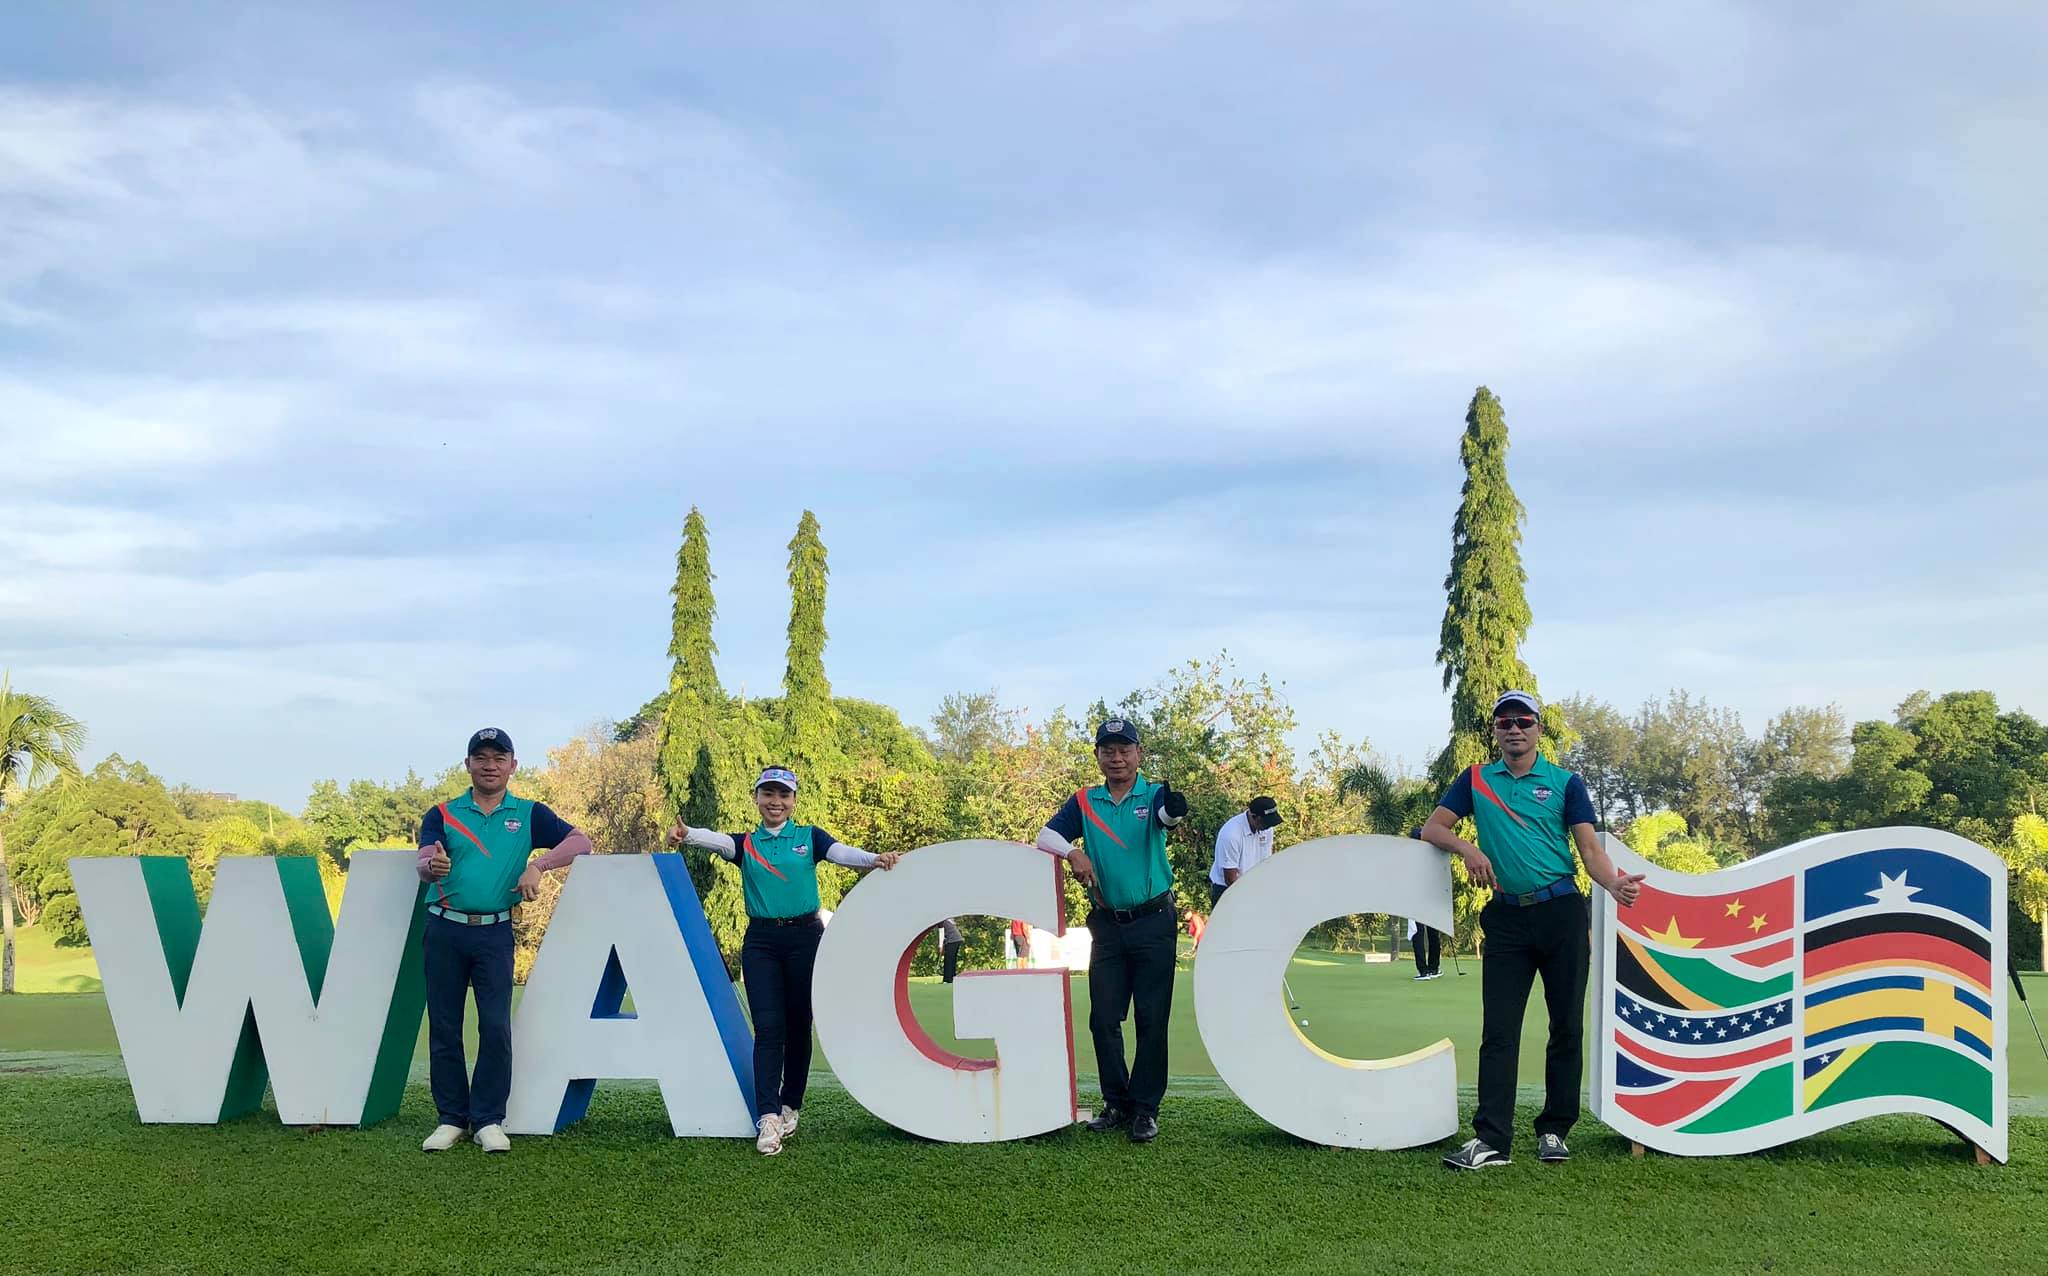 Tuyển Việt Nam cải thiện thành tích ở vòng 3 Chung kết WAGC 2019